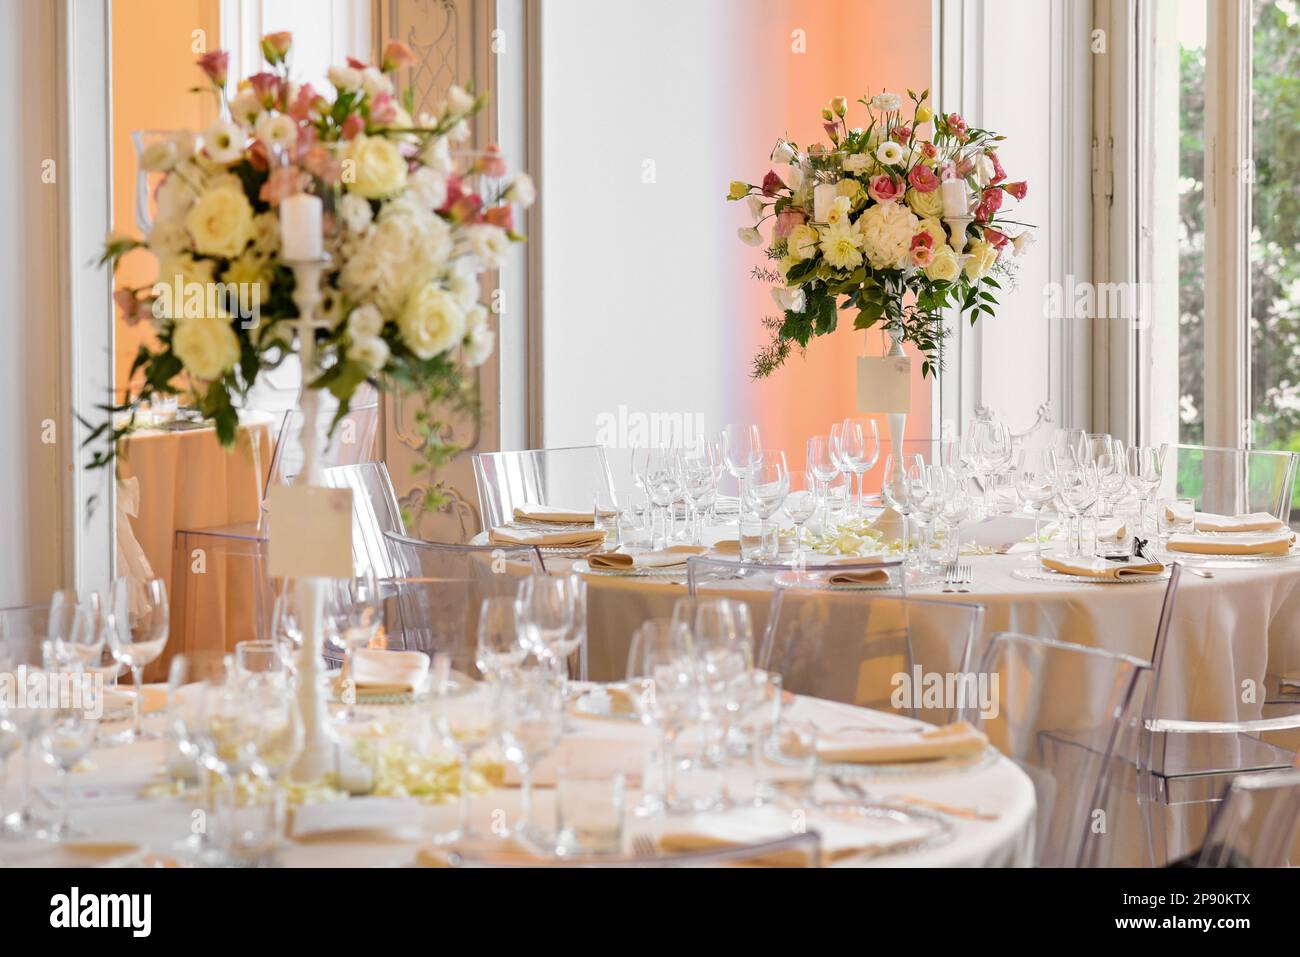 Elegantes mesas de banquete de boda con cristalería y flores en flor en jarrones contra la ventana Foto de stock